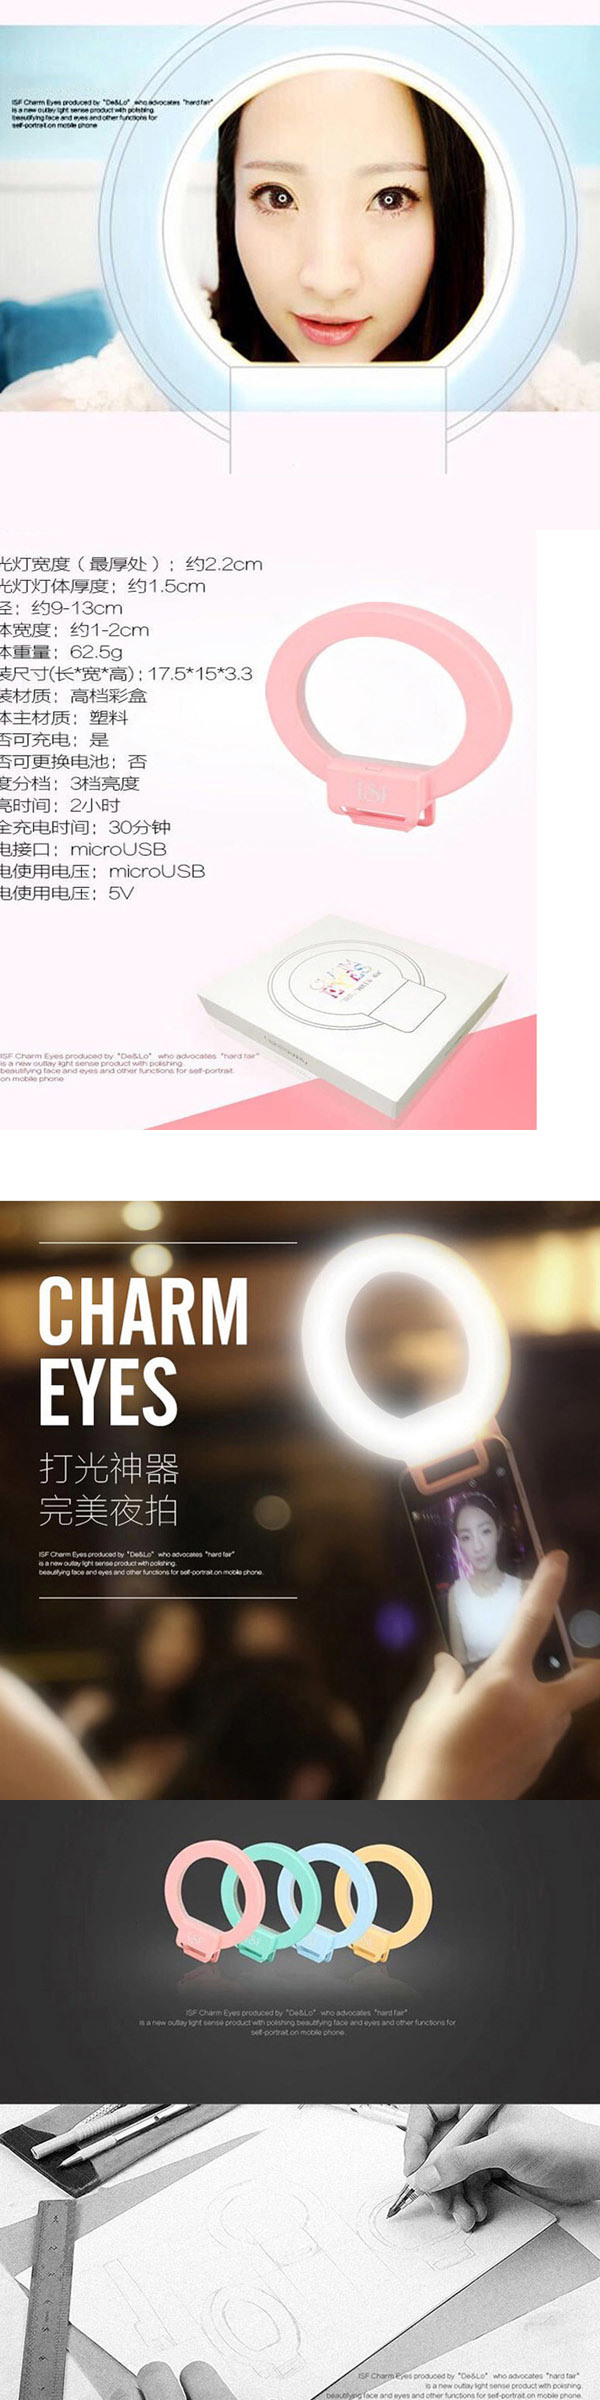 Circle Flashlight Charm Eyes 4 LED Night Using Selfie